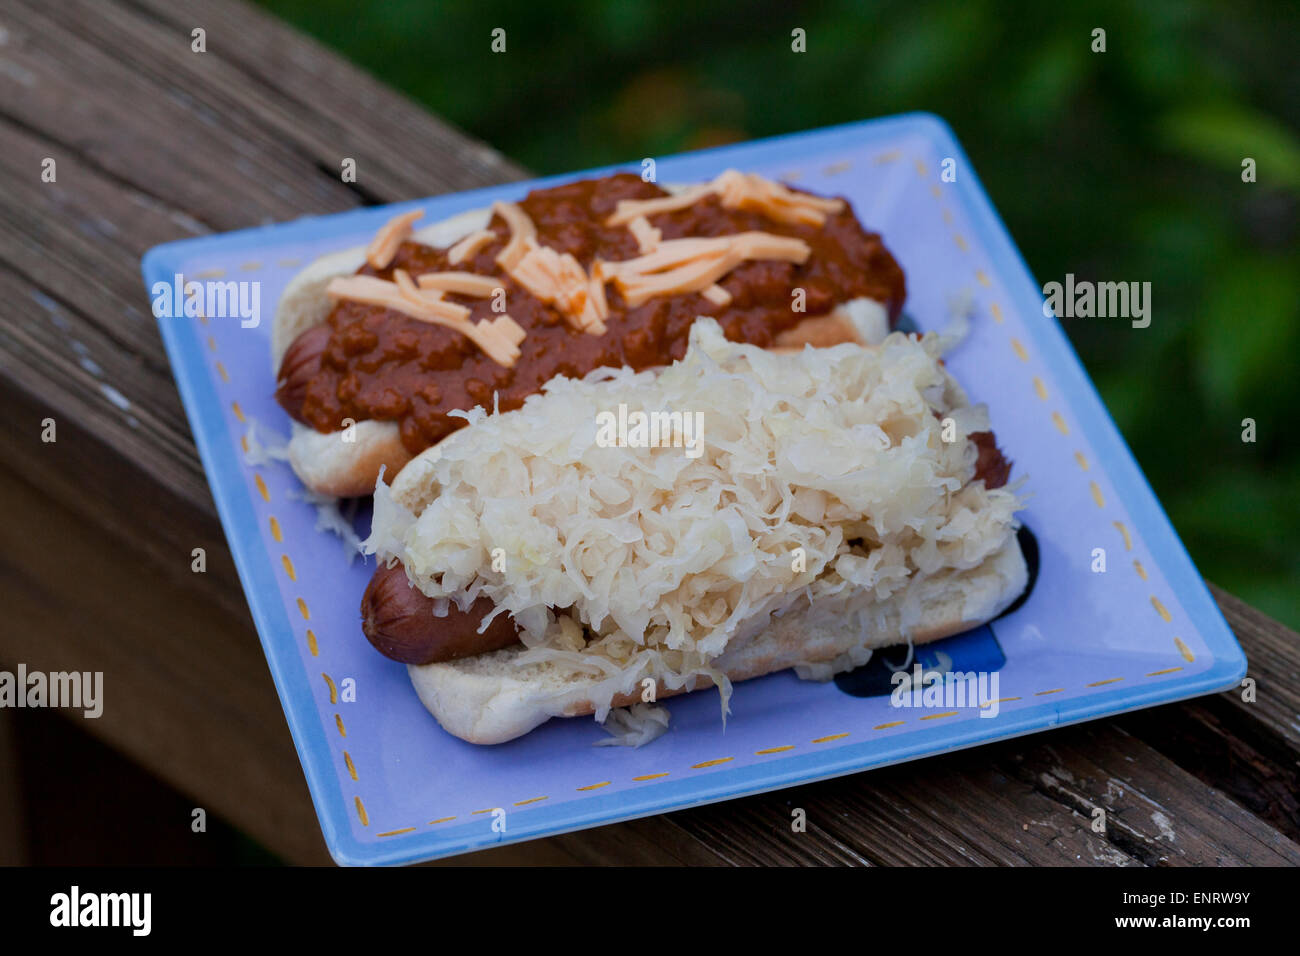 La choucroute et de chili hot dogs on plate Banque D'Images